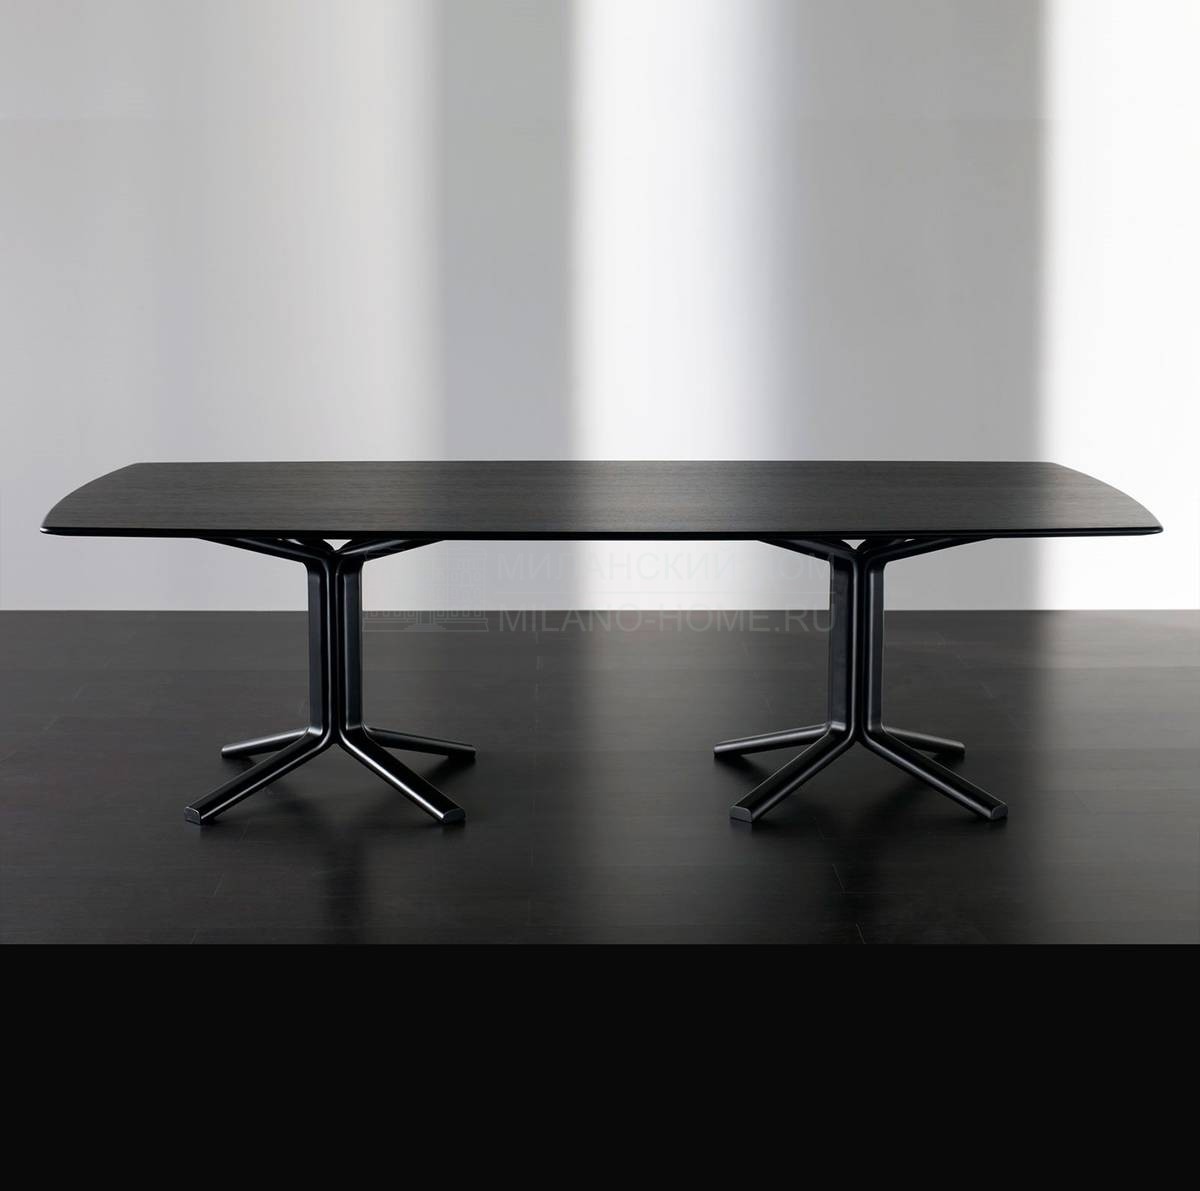 Обеденный стол Miller rectangular из Италии фабрики MERIDIANI